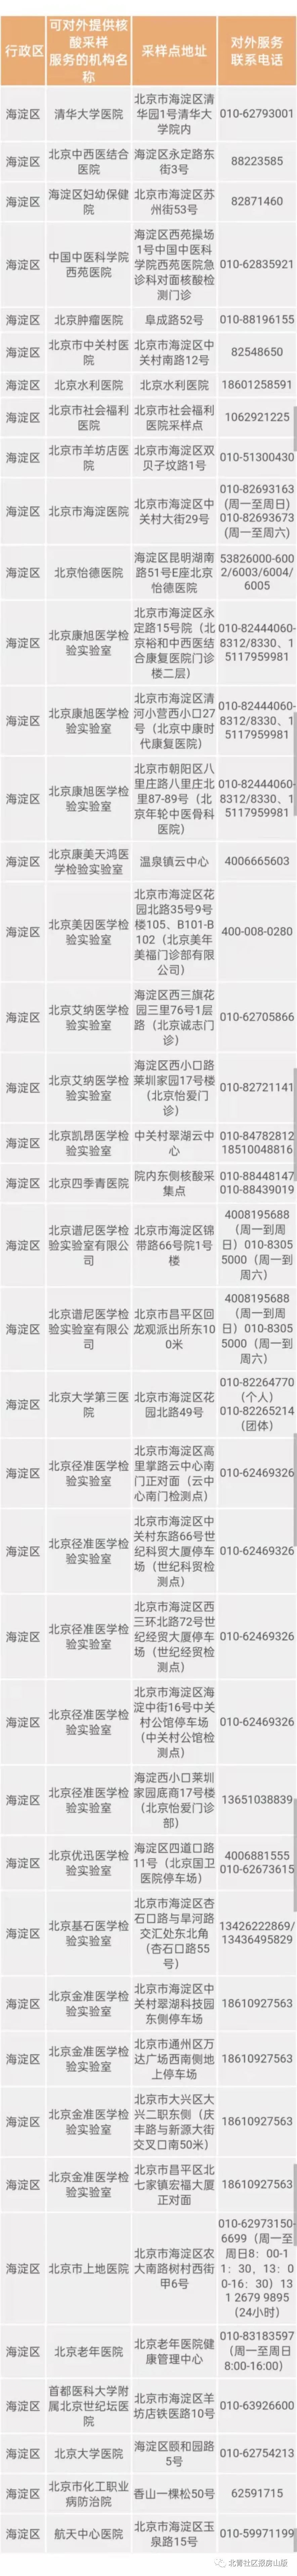 罗湖区委书记刘胜收藏官员来了鼓励贪腐小时这几天